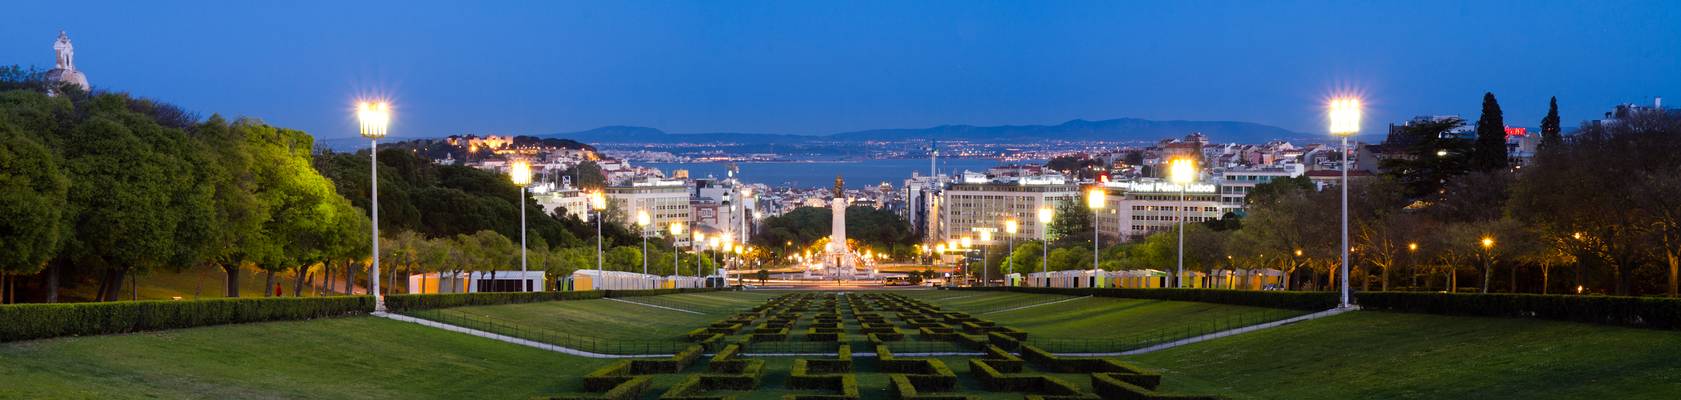 Lisboa from Park Eduardo VII